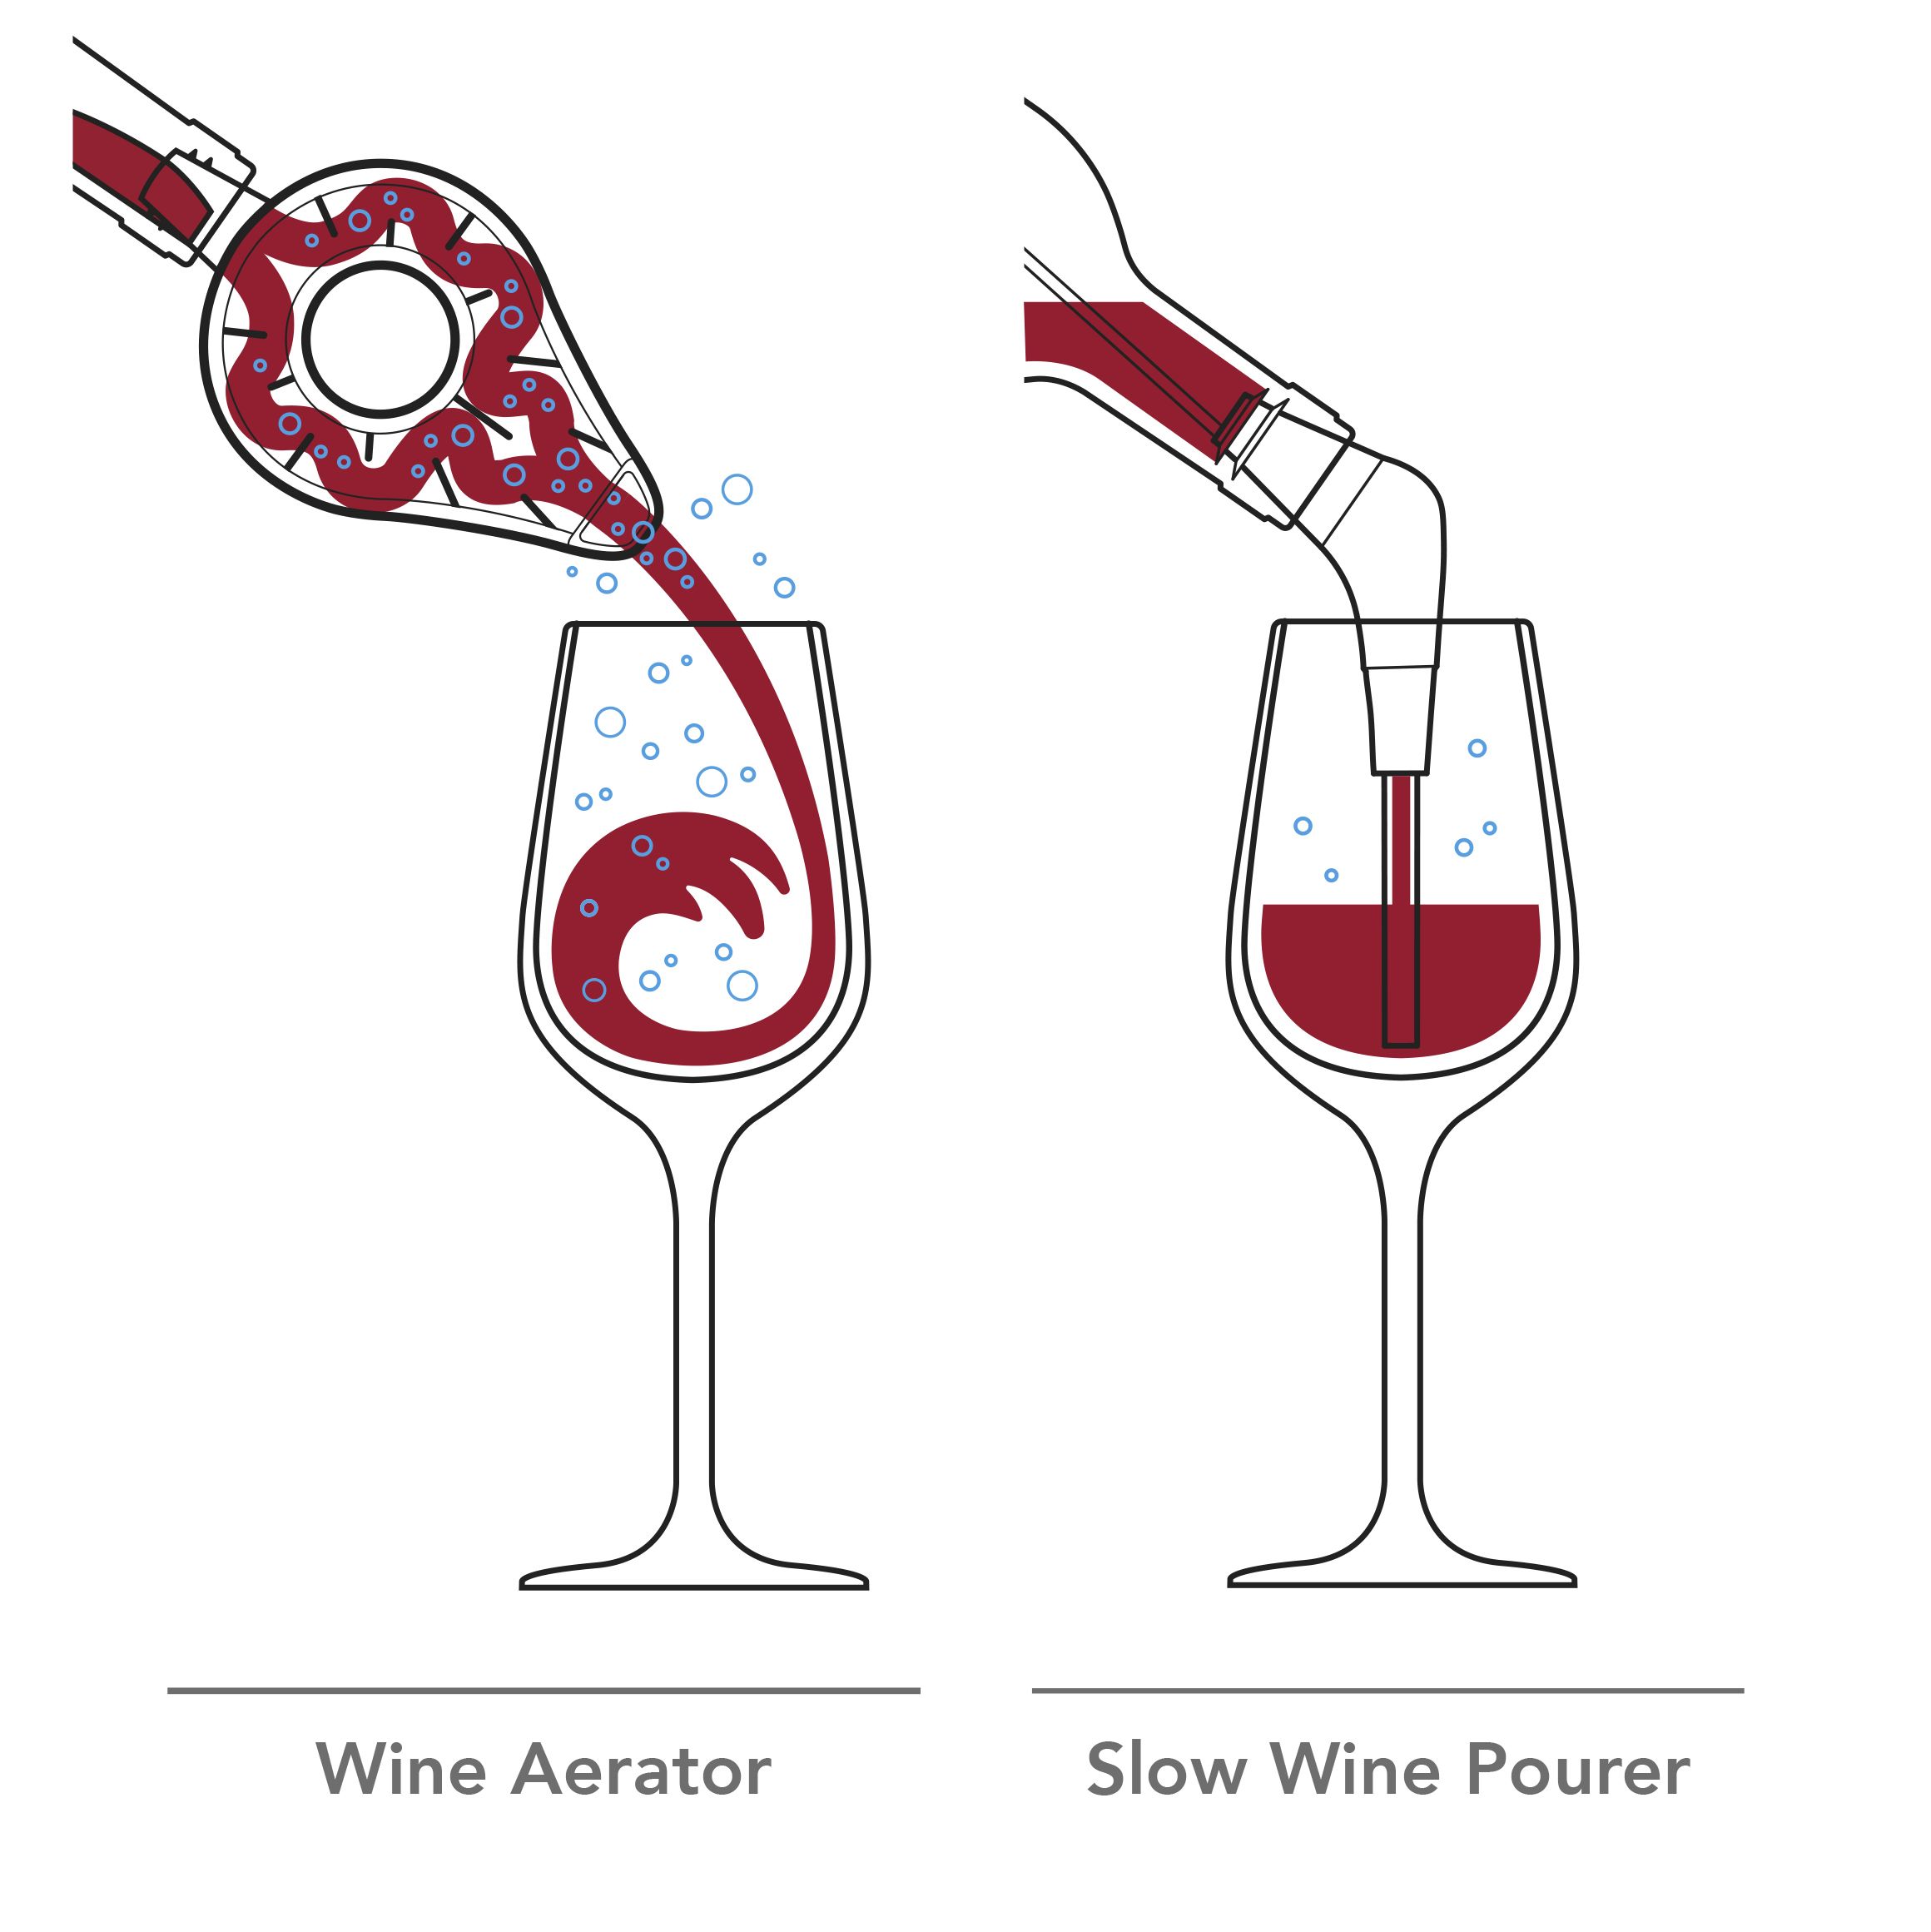 Vacu Vin Wine Aerator